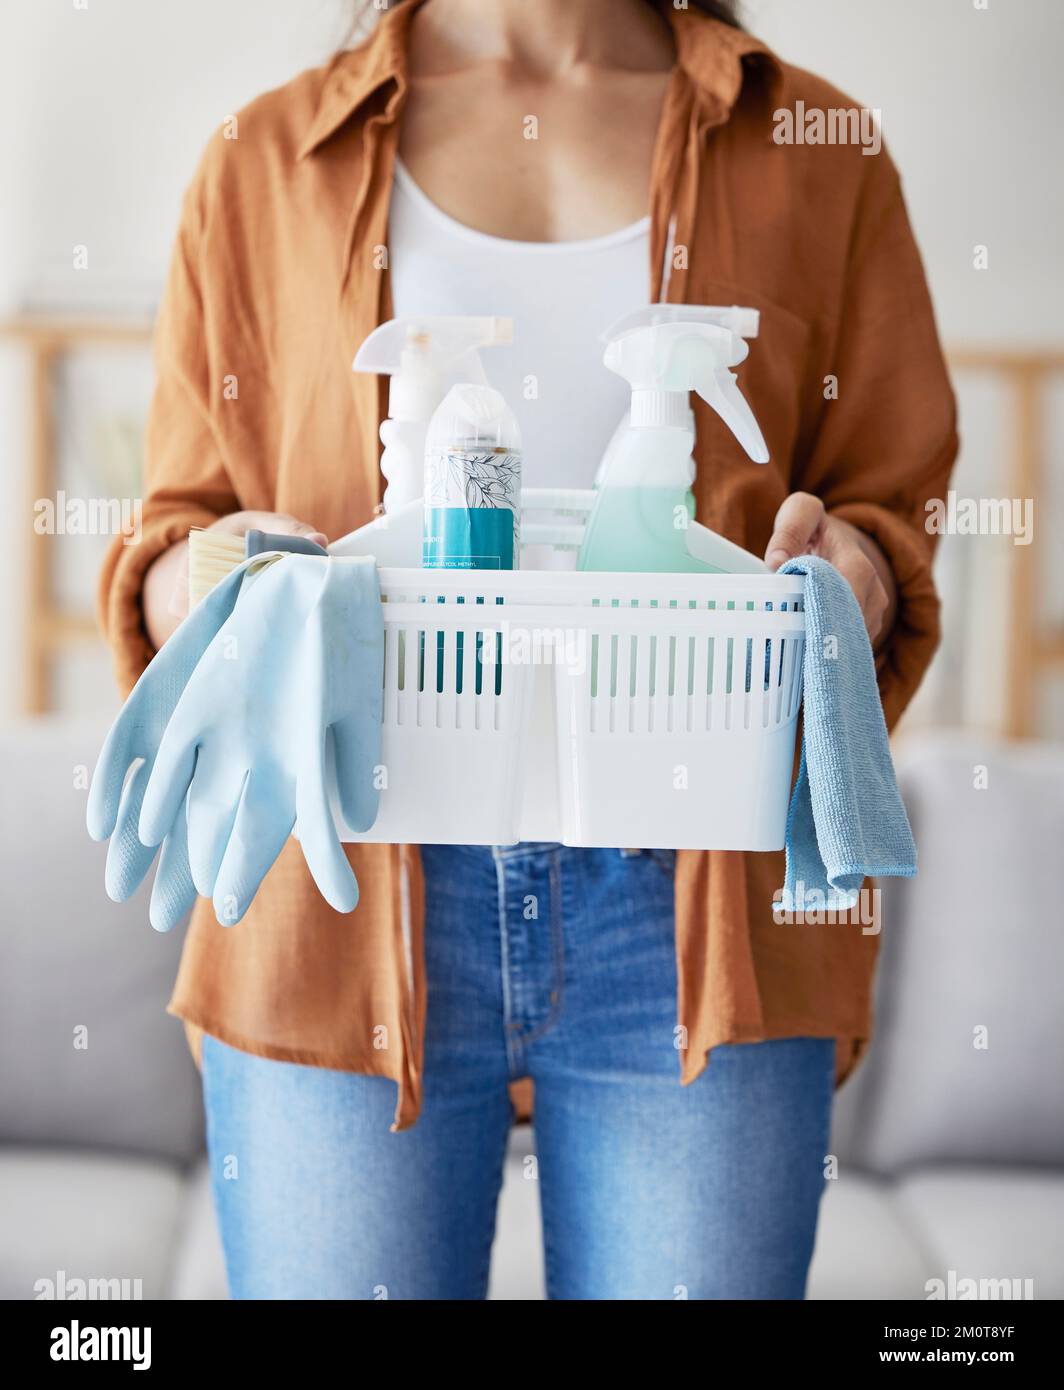 Reinigungsservice, Produktkorb und saubere Hände für Wohnzimmerwohnungen, Startup-Mitarbeiter mit Plastikflasche, Behälter und Tuch. Frau, Hygiene Stockfoto